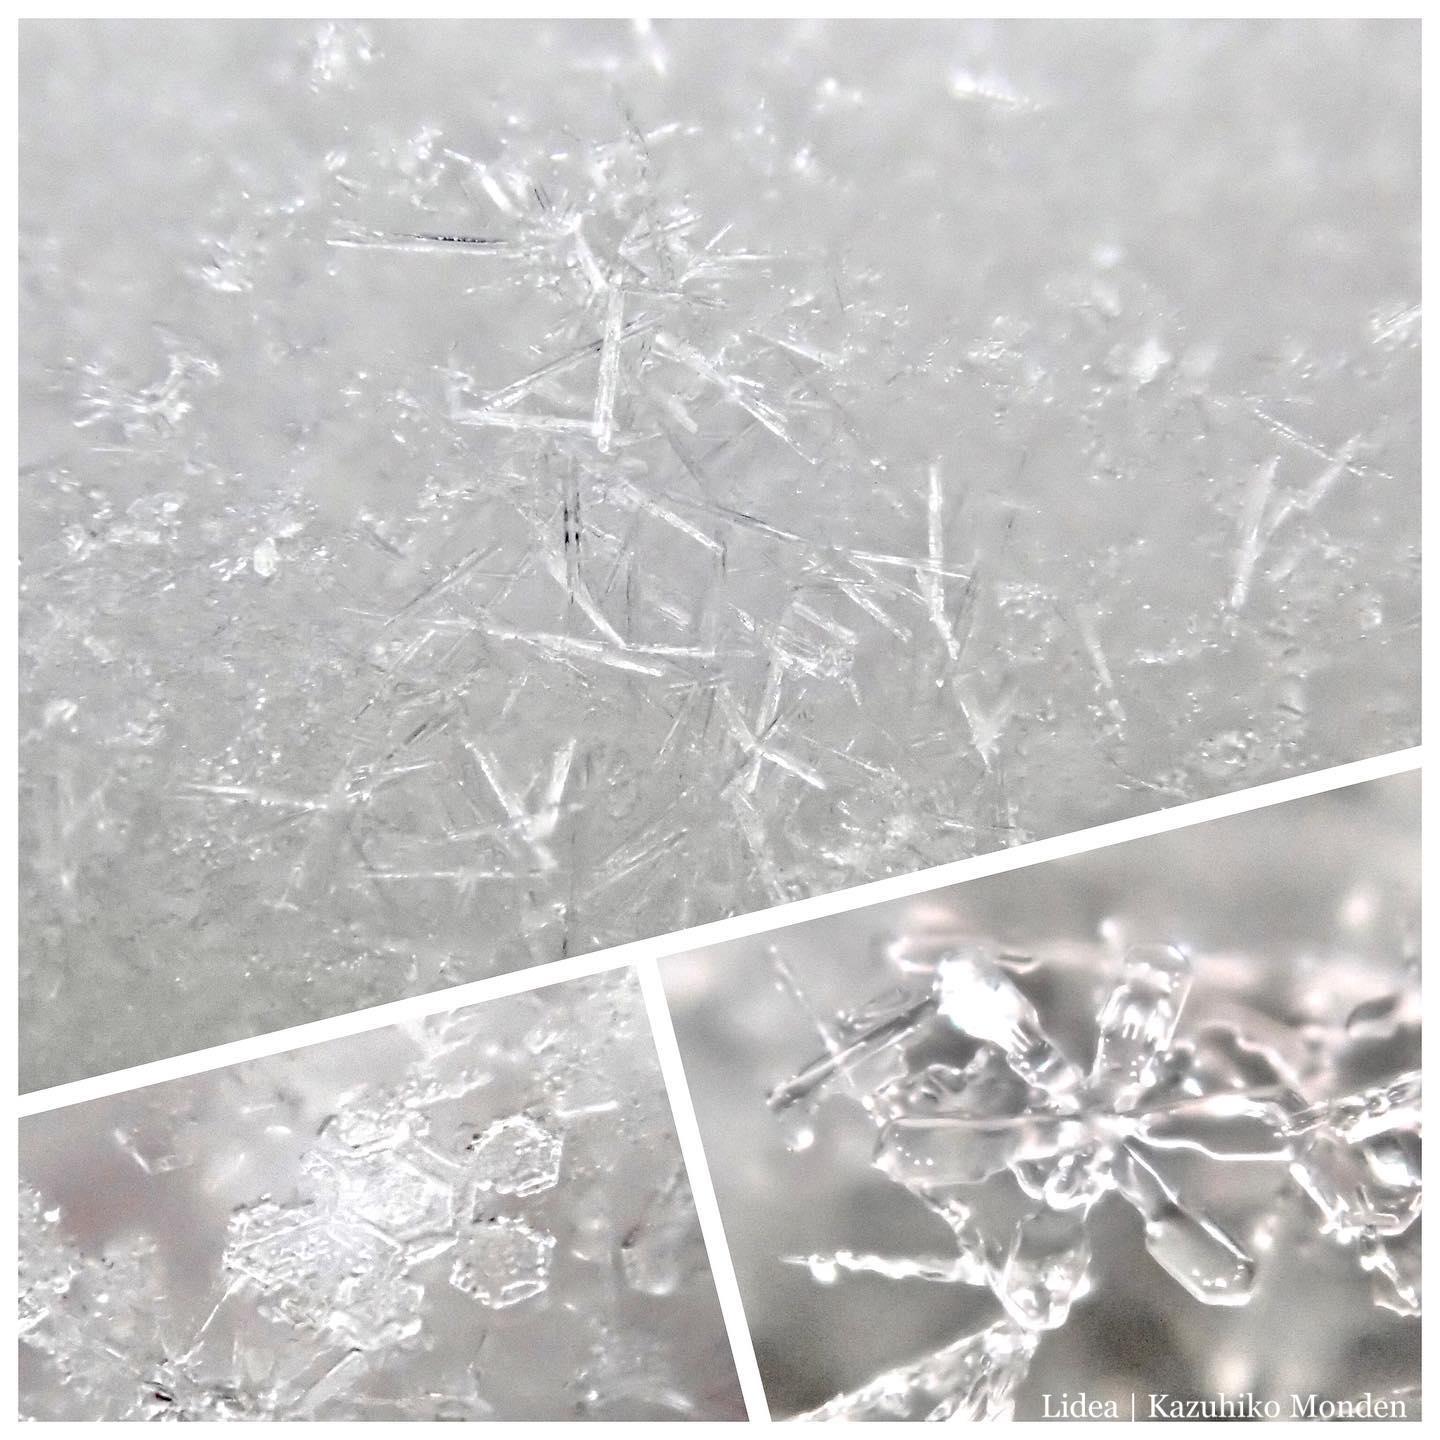 Today’s Snow Crystals.雪の結晶は形が様々。今日は針状のものが目立ってた。